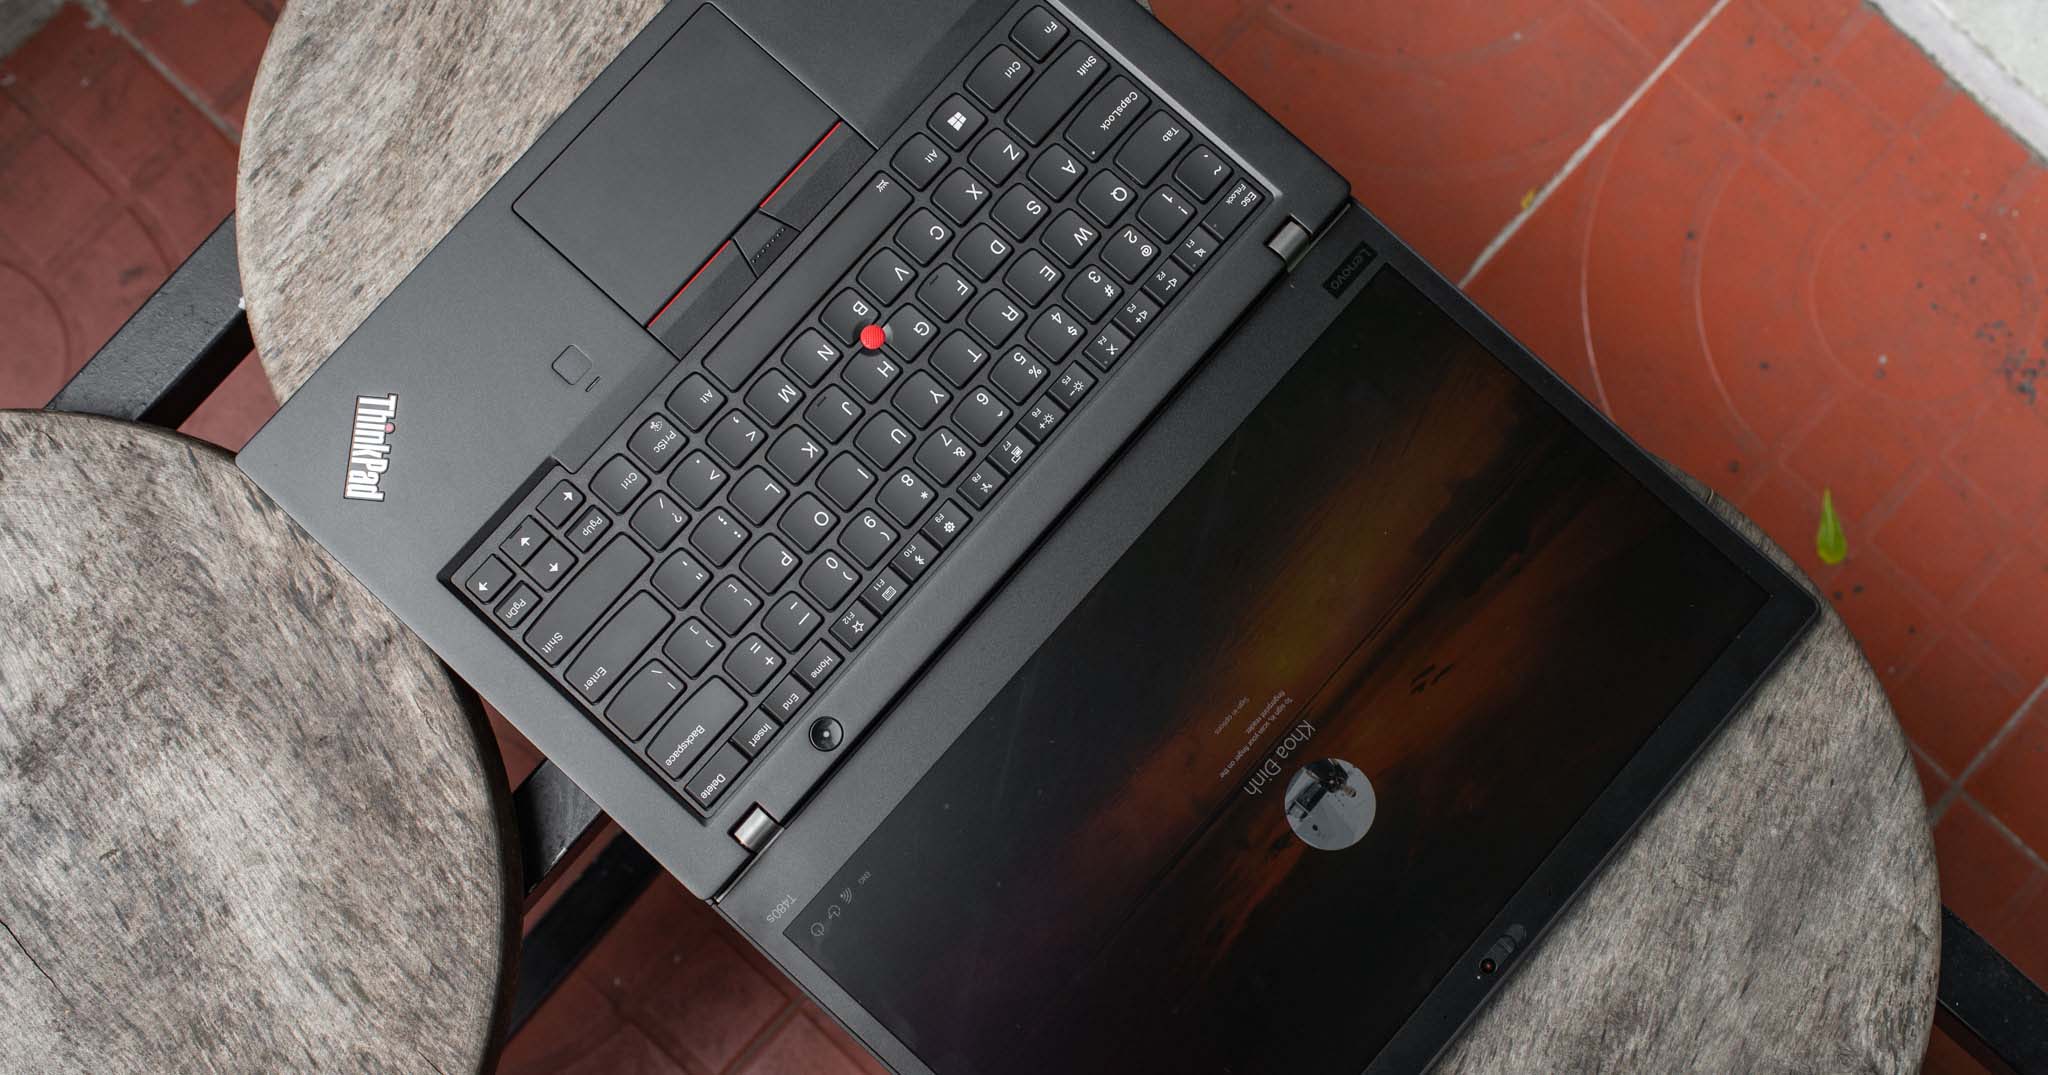 ThinkPad T480 và T480s: cấu hình mới hiệu năng tốt hơn, màn hình chỉ hợp làm văn phòng, pin lâu